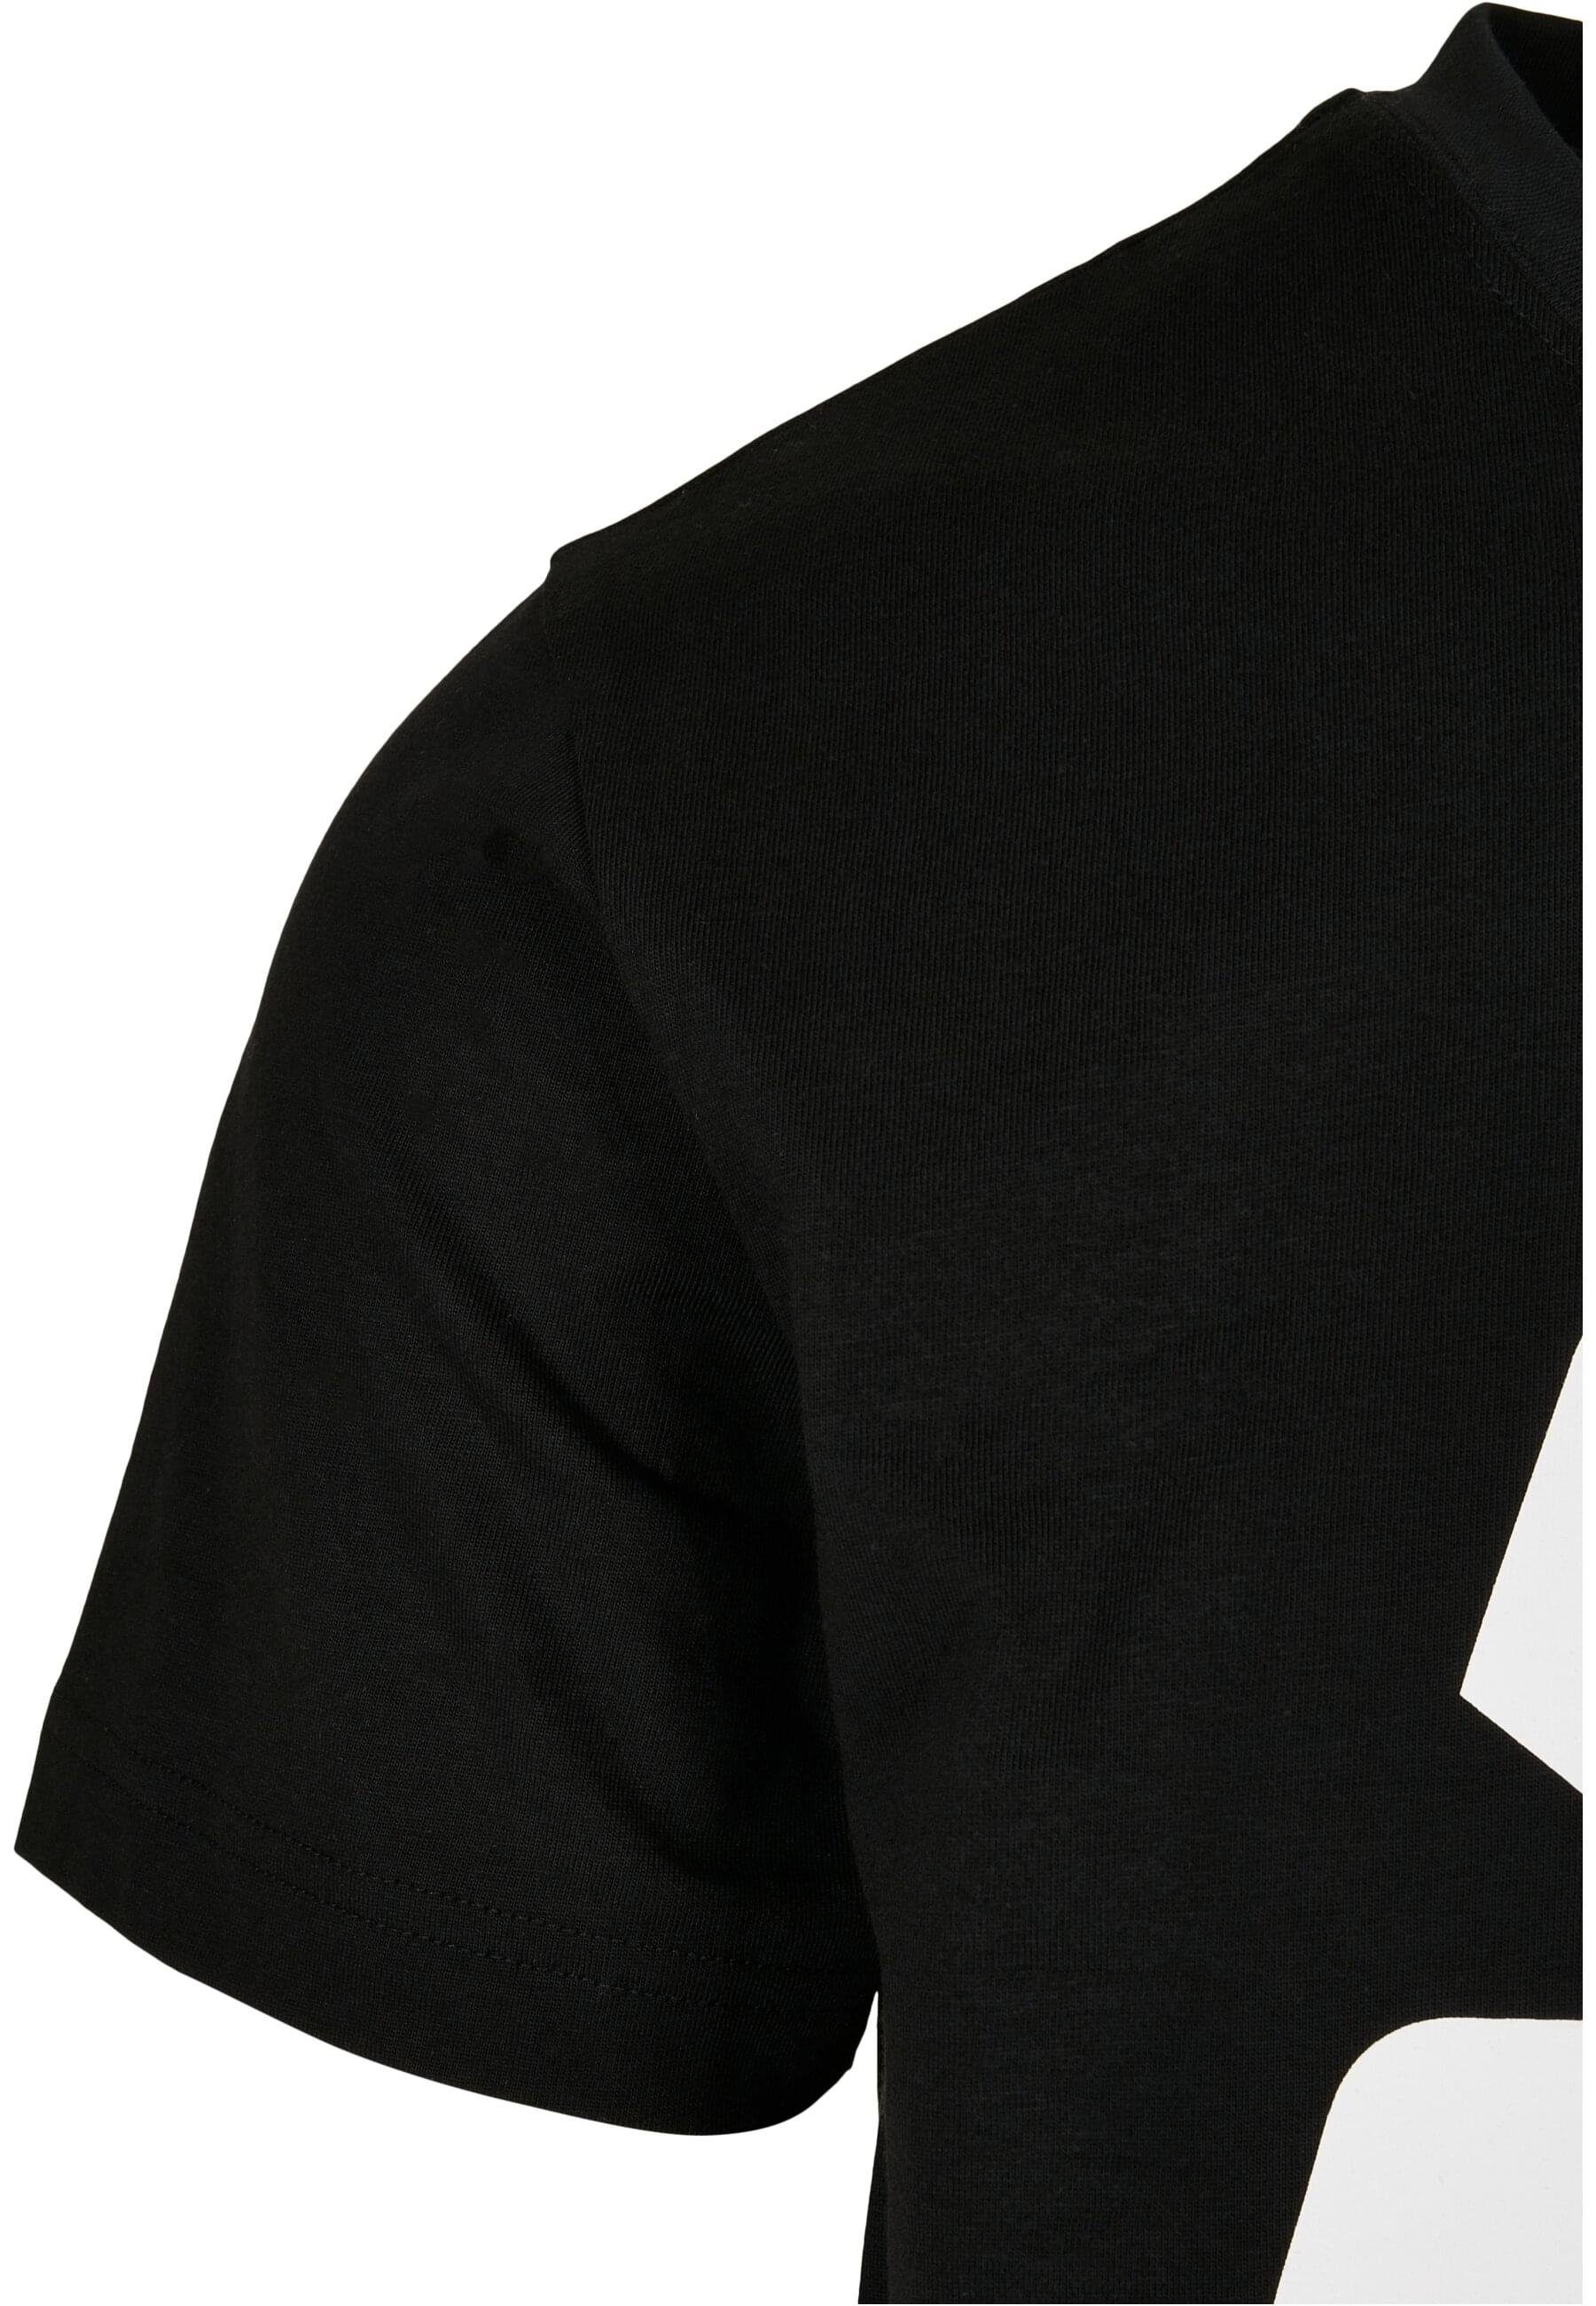 Starter T-Shirt Herren Starter Logo (1-tlg) Tee black